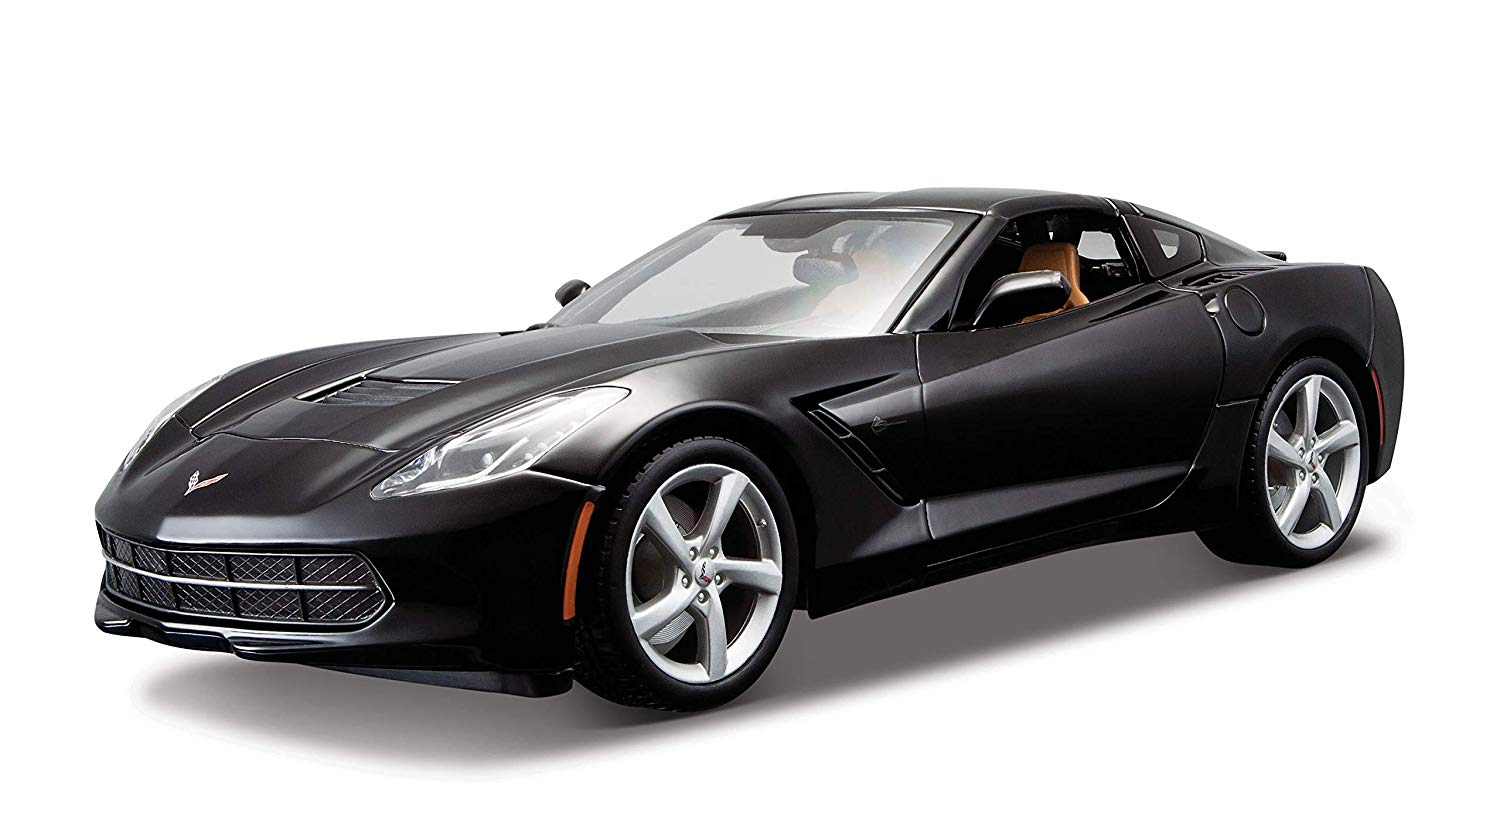 Maisto – Corvette, Black (31182Bk)